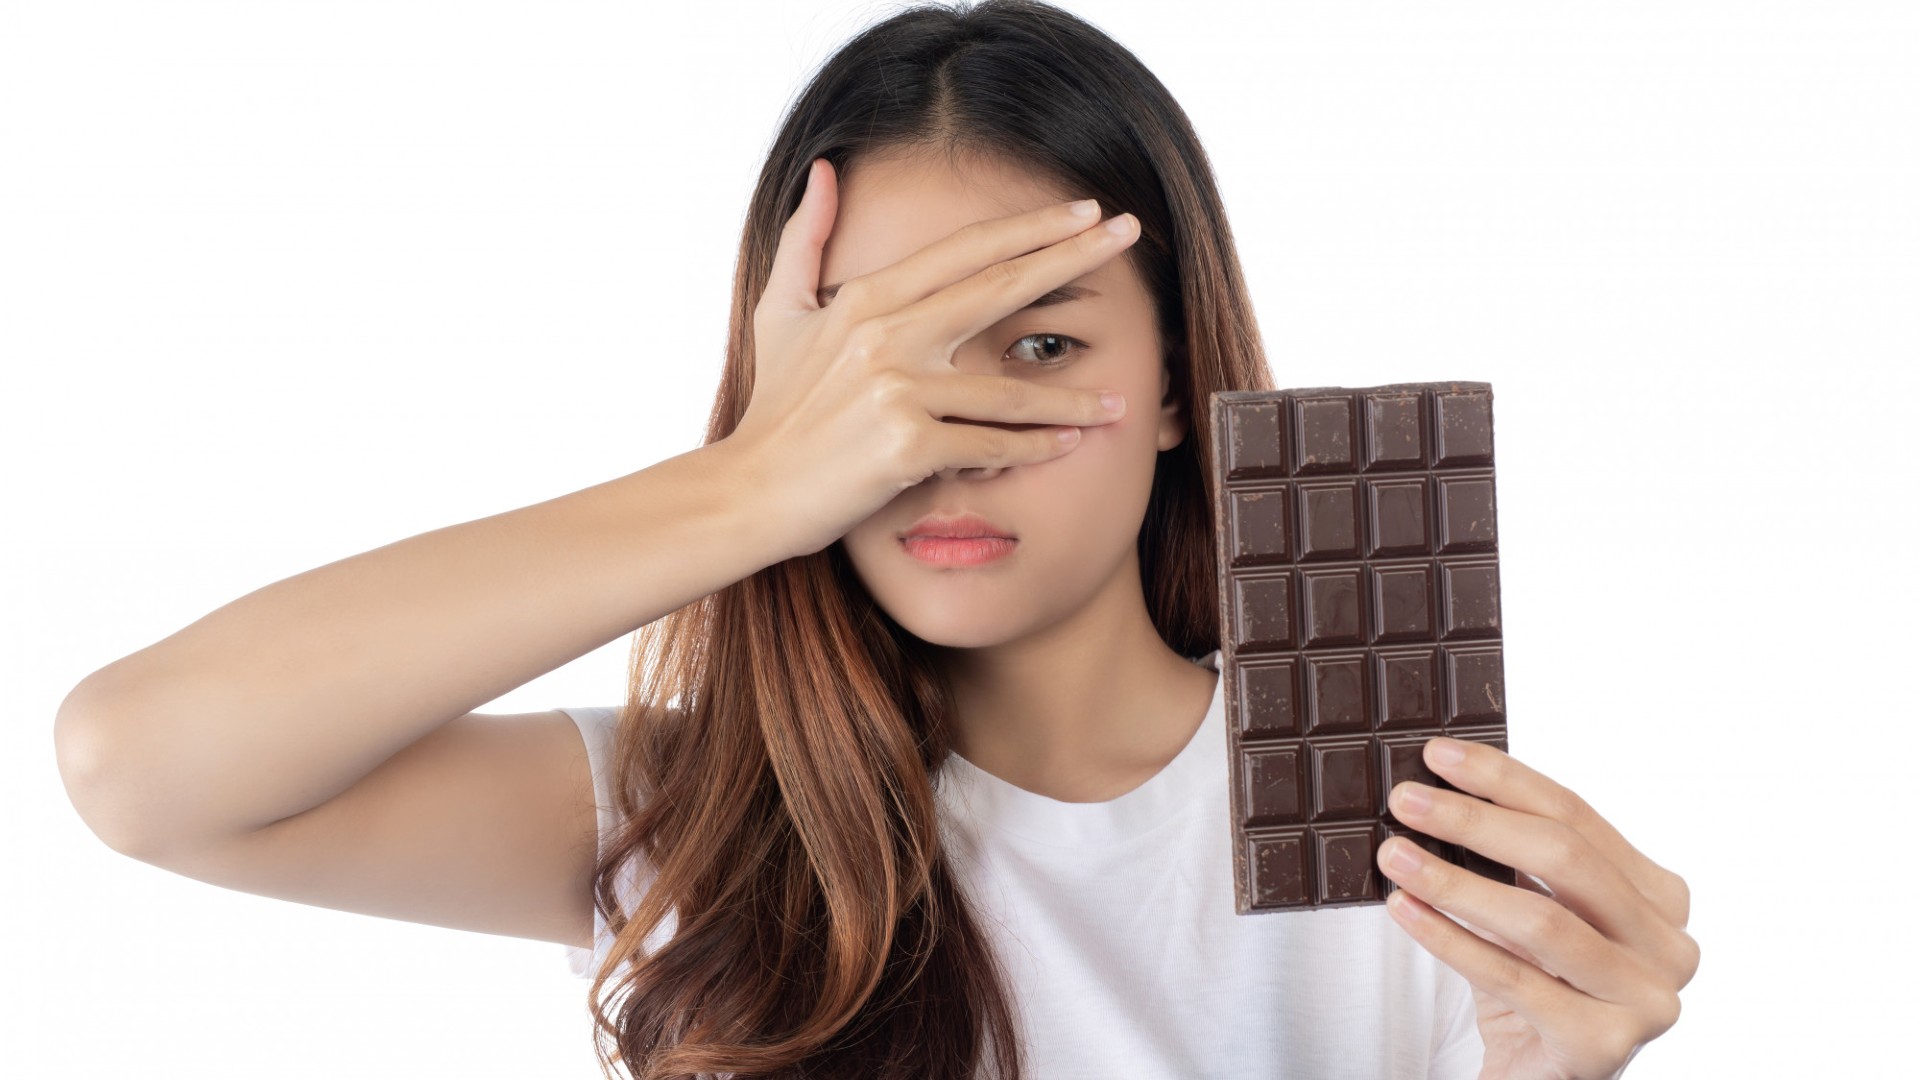 Foto de capa do artigo "Acne: rotina alimentar pode causar espinhas? O que evitar?"